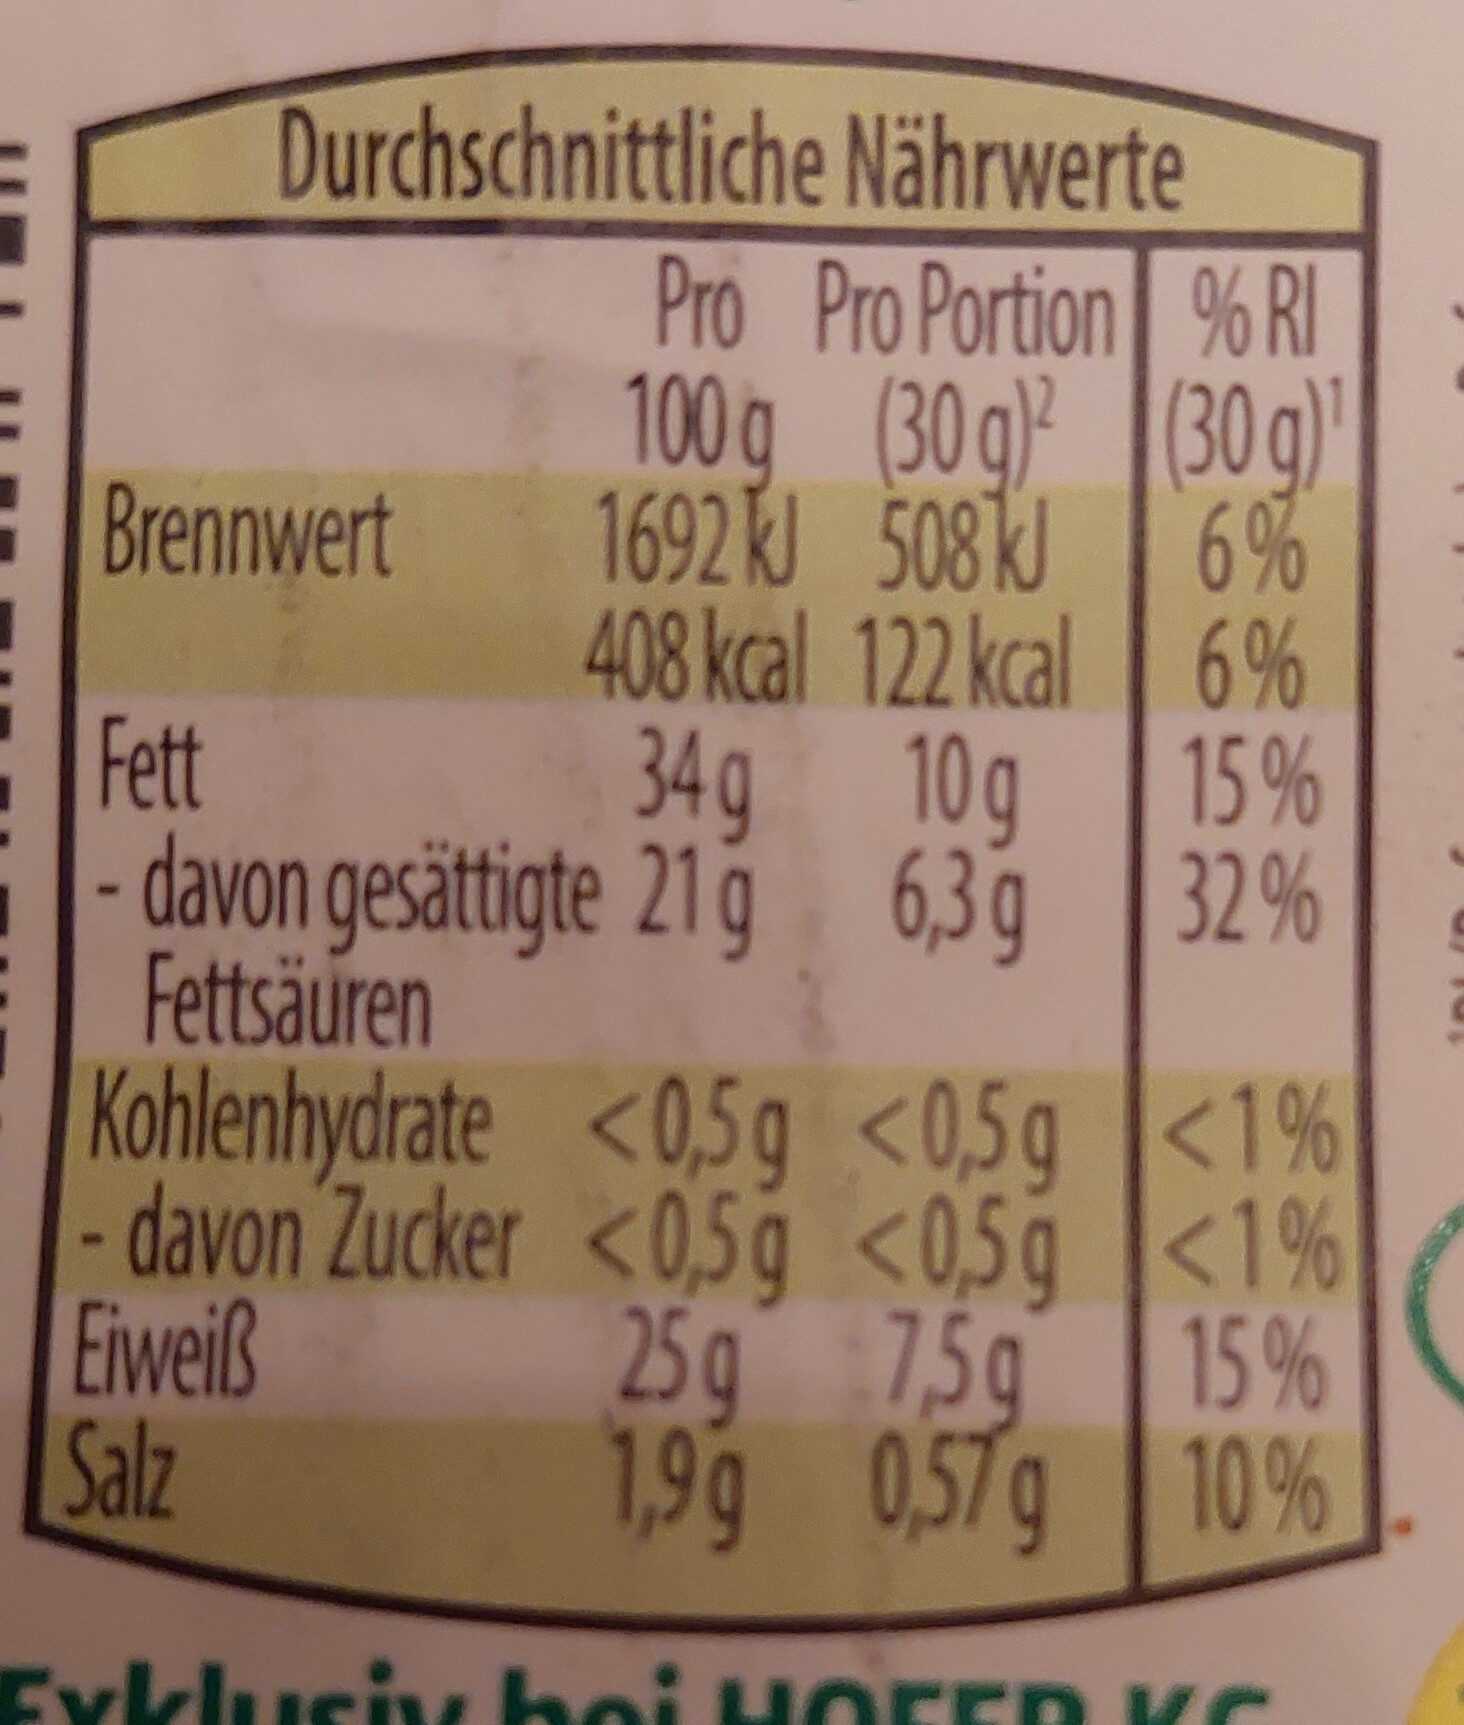 Bergbauern Heumilch Sennkäse natur - Tableau nutritionnel - de